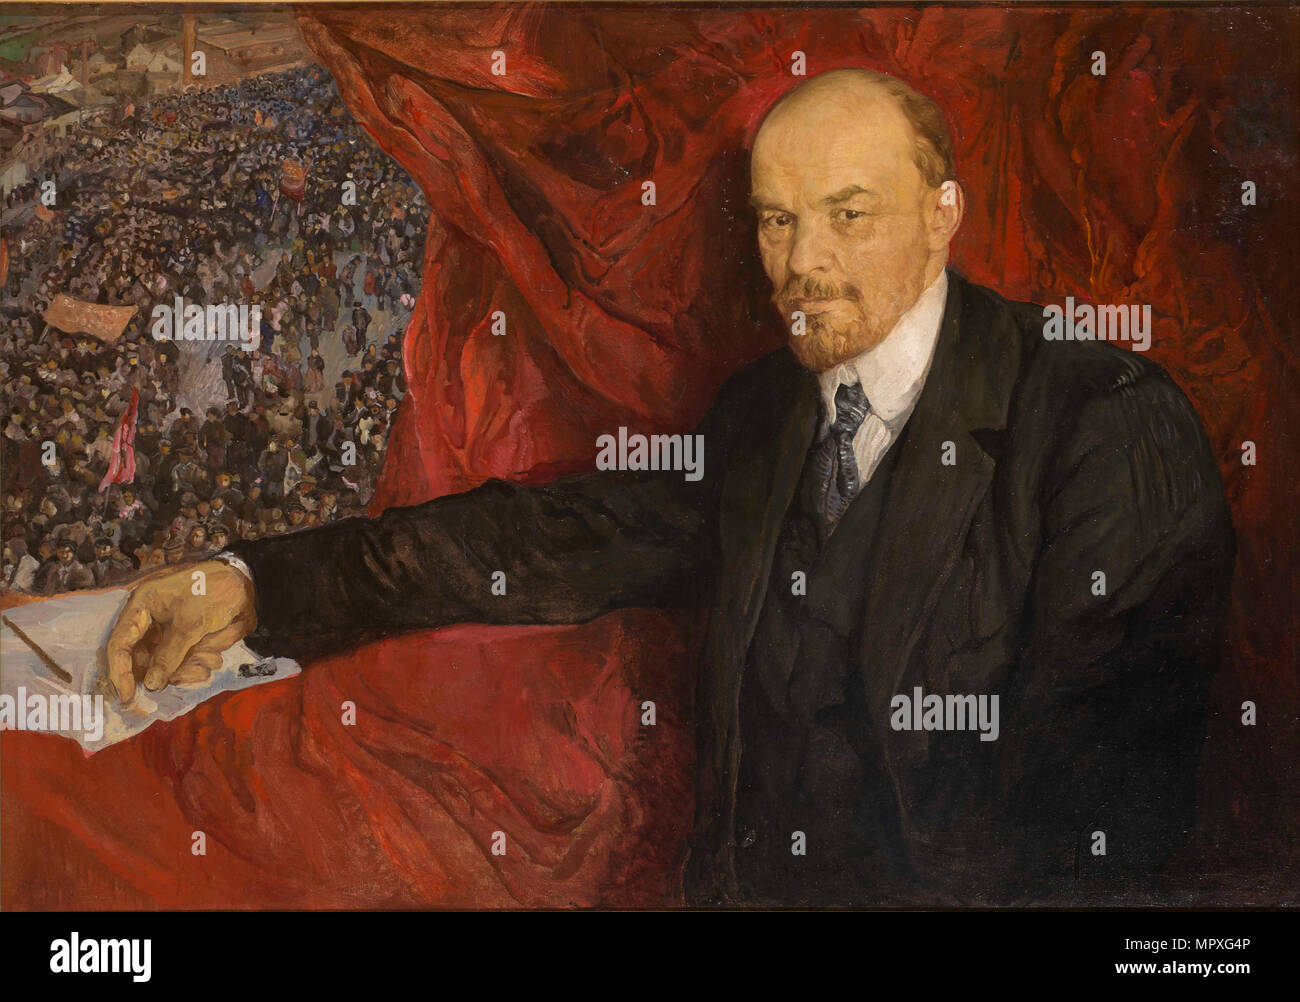 Lenin and Manifestation, 1919. Stock Photo